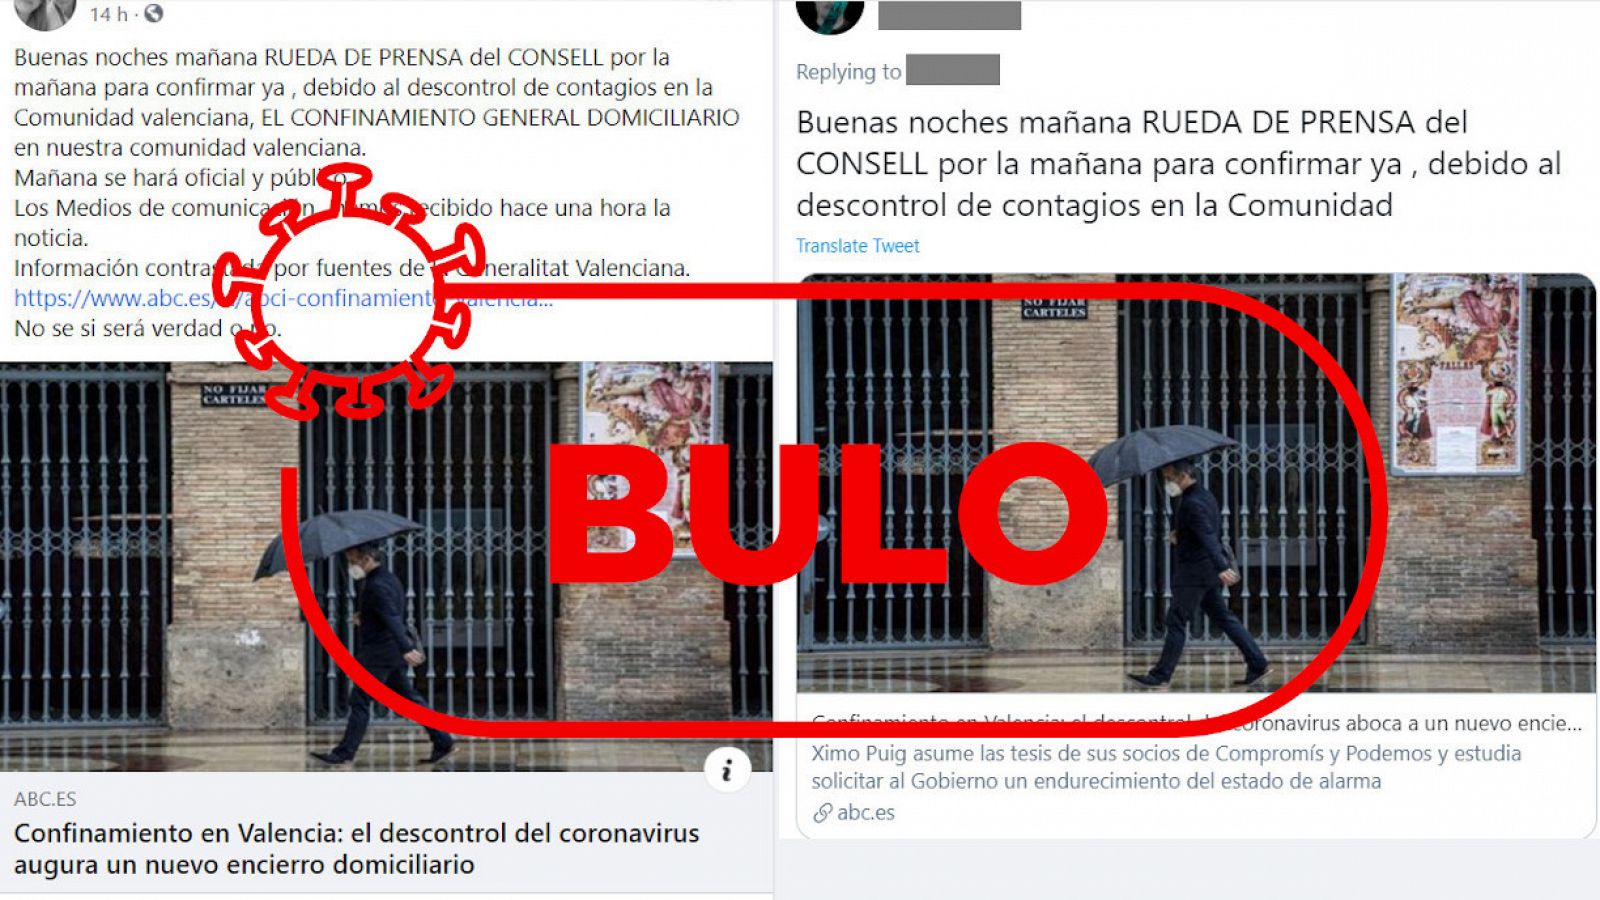 Capturas del falso anuncio de rueda de prensa y confinamiento de la Comunidad Valenciana en Twitter.